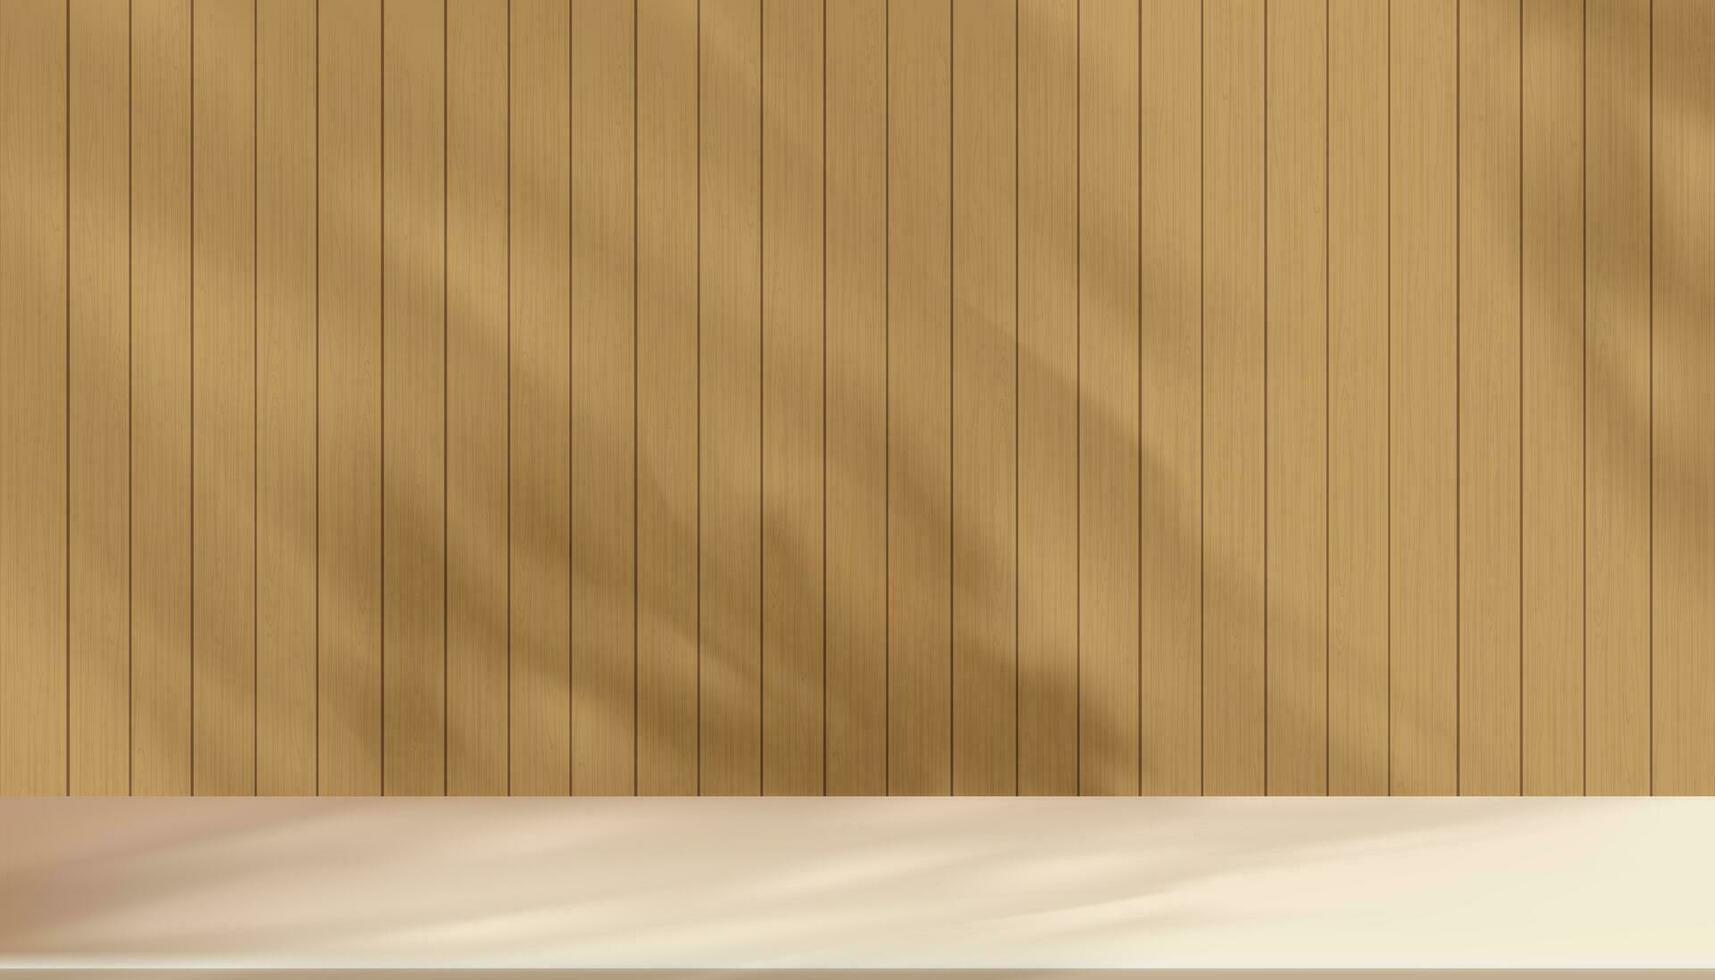 fundo estúdio 3d bege exibição com sombra folhas em Castanho madeira parede quarto com cimento chão, conceito para orgânico Cosmético produtos apresentação, outono, inverno venda conectados loja, vetor